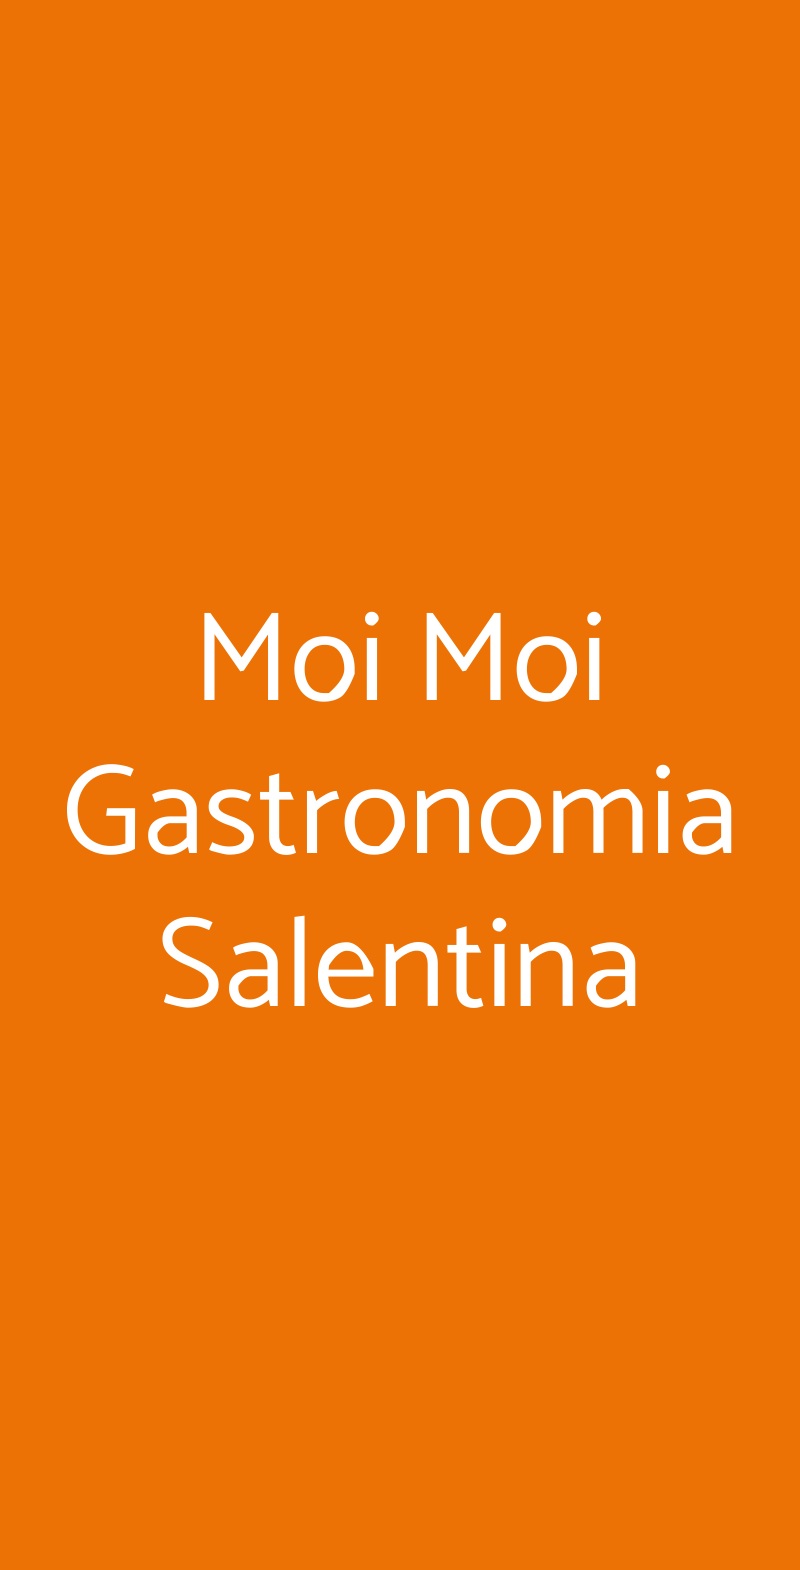 Moi Moi Gastronomia Salentina Torino menù 1 pagina